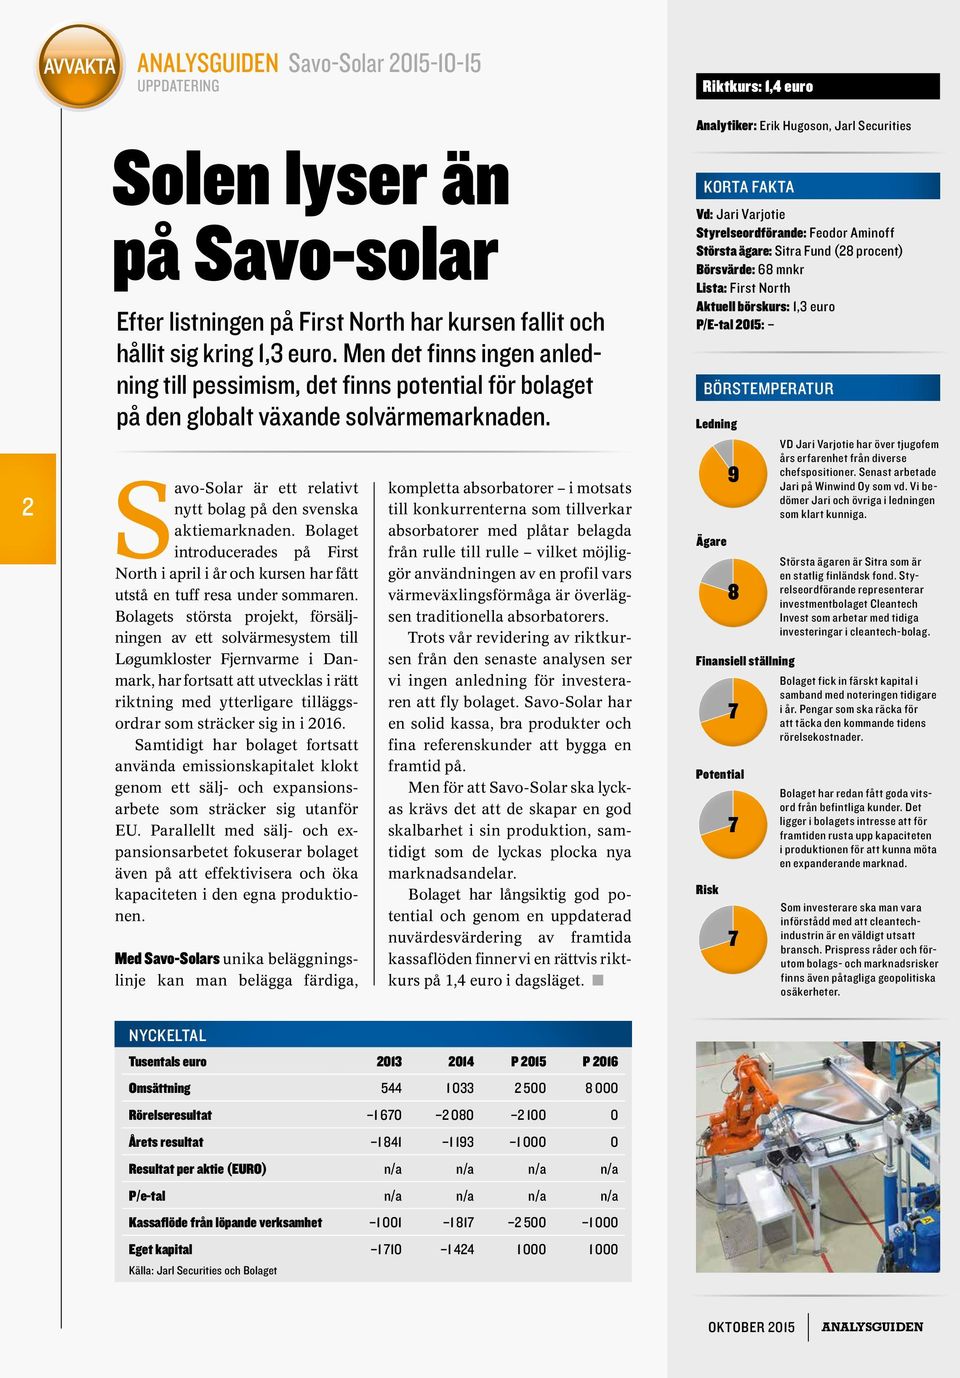 Savo-Solar är ett relativt nytt bolag på den svenska aktiemarknaden. Bolaget introducerades på First North i april i år och kursen har fått utstå en tuff resa under sommaren.